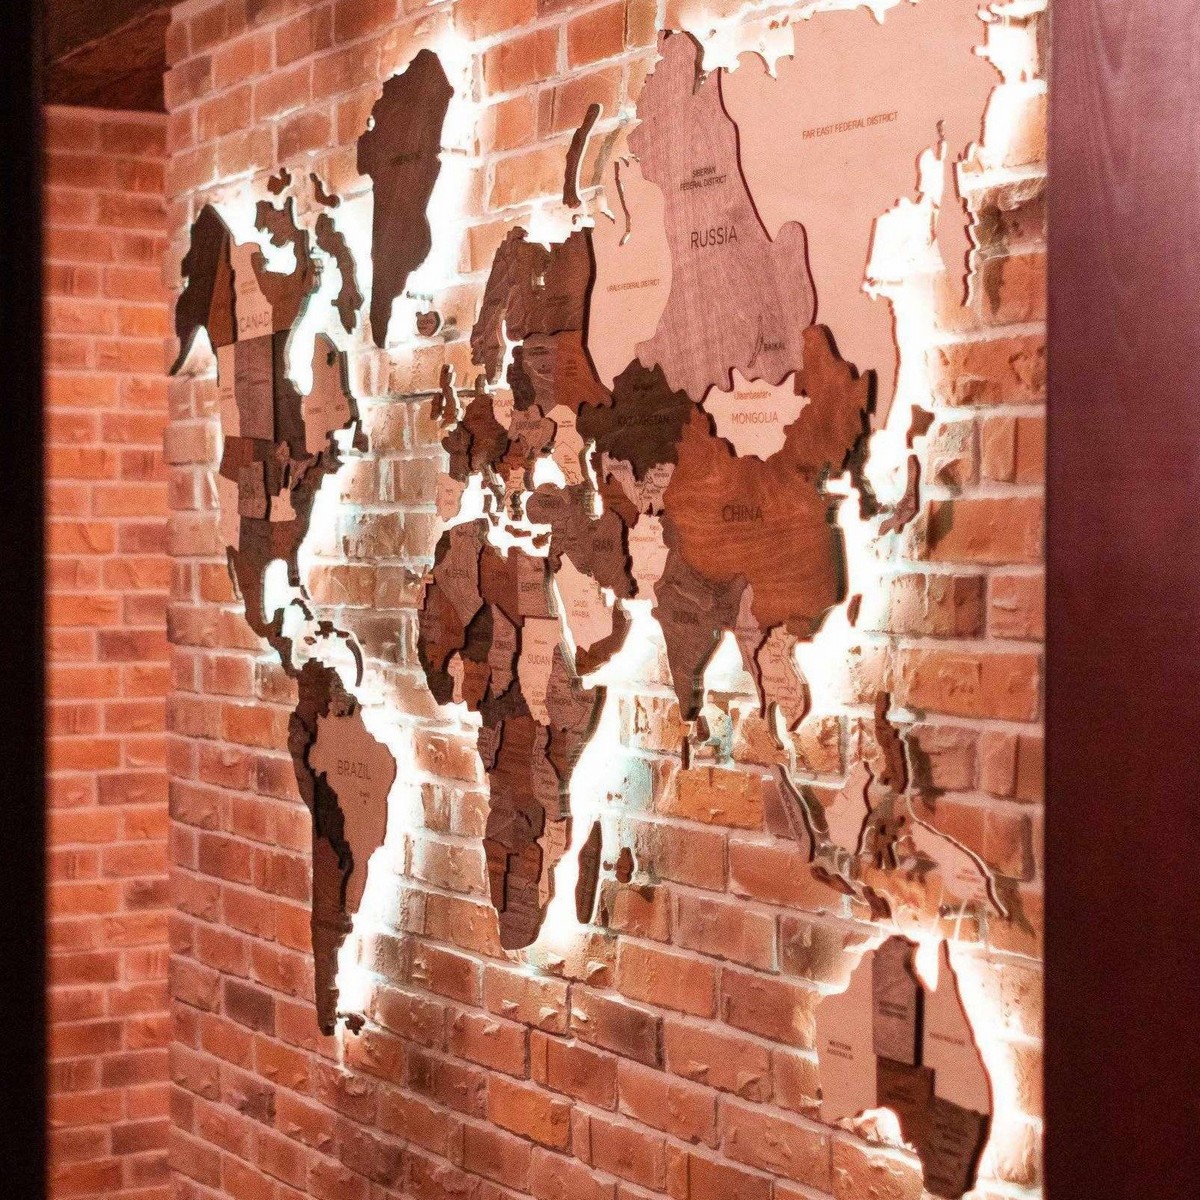 Harta e botës prej druri në mur, me dritë led